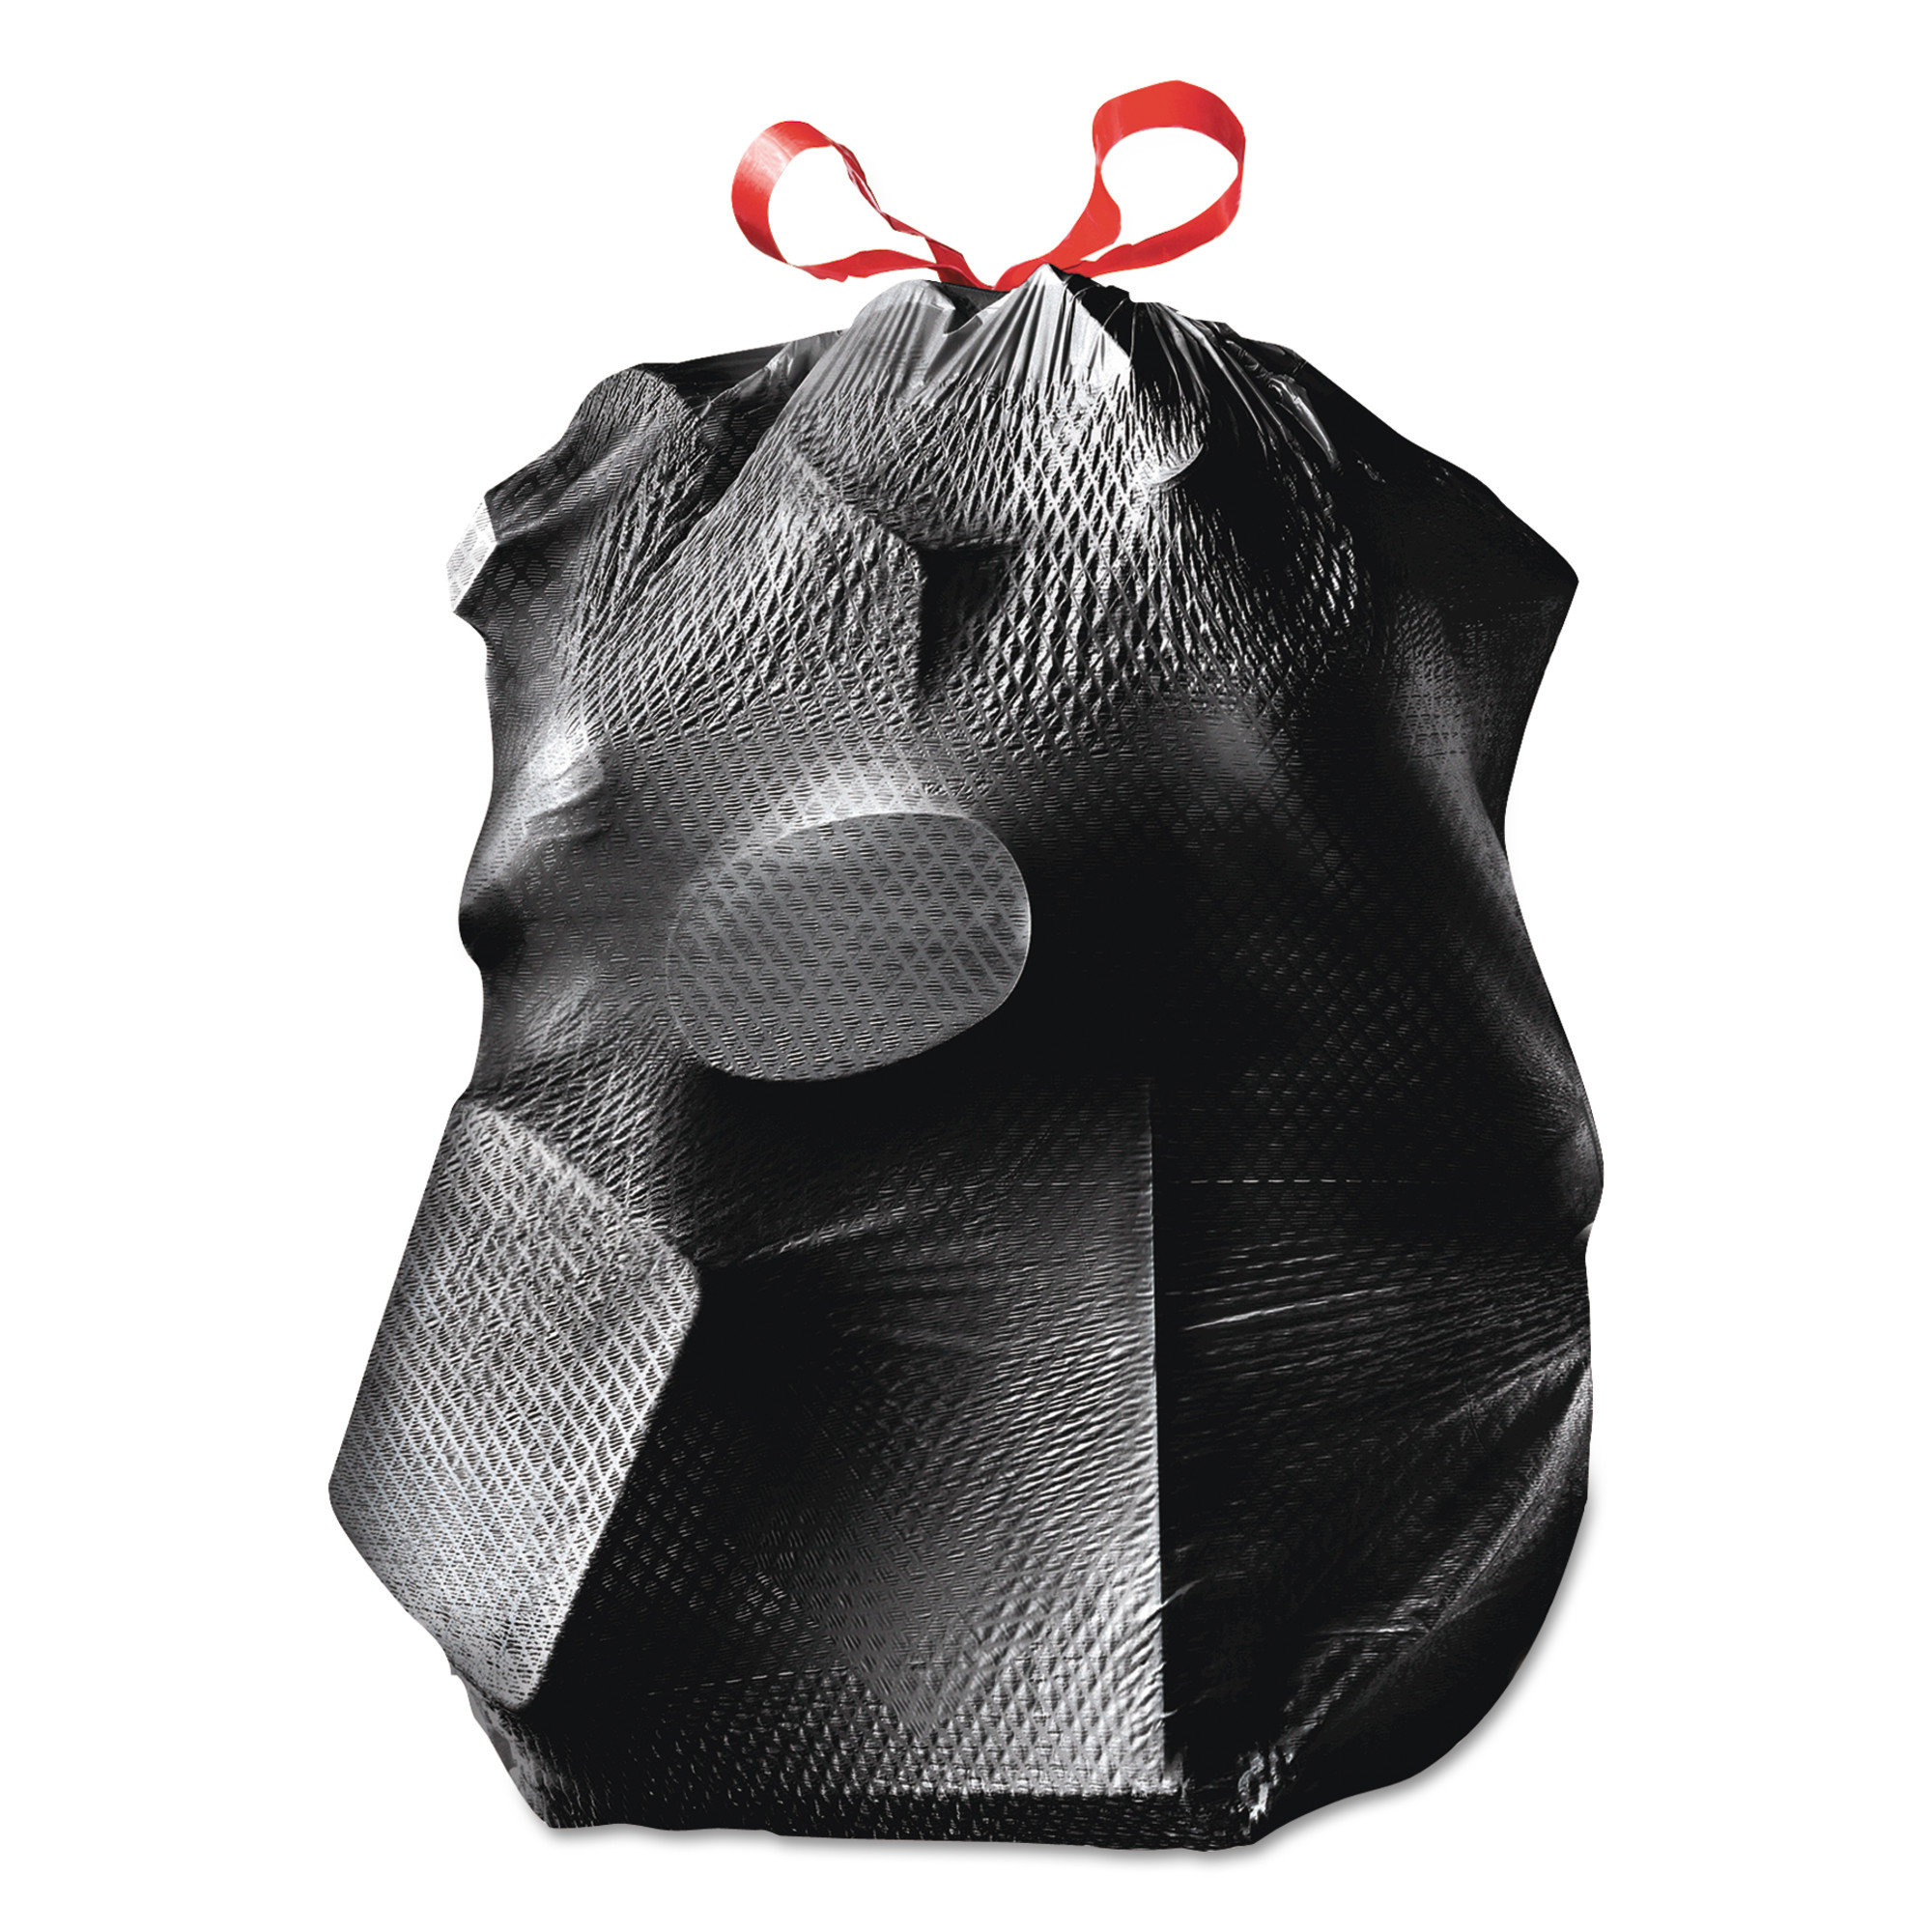 Kroger® Twist Tie Clean Linen Small Trash Bags, 30 ct - Kroger